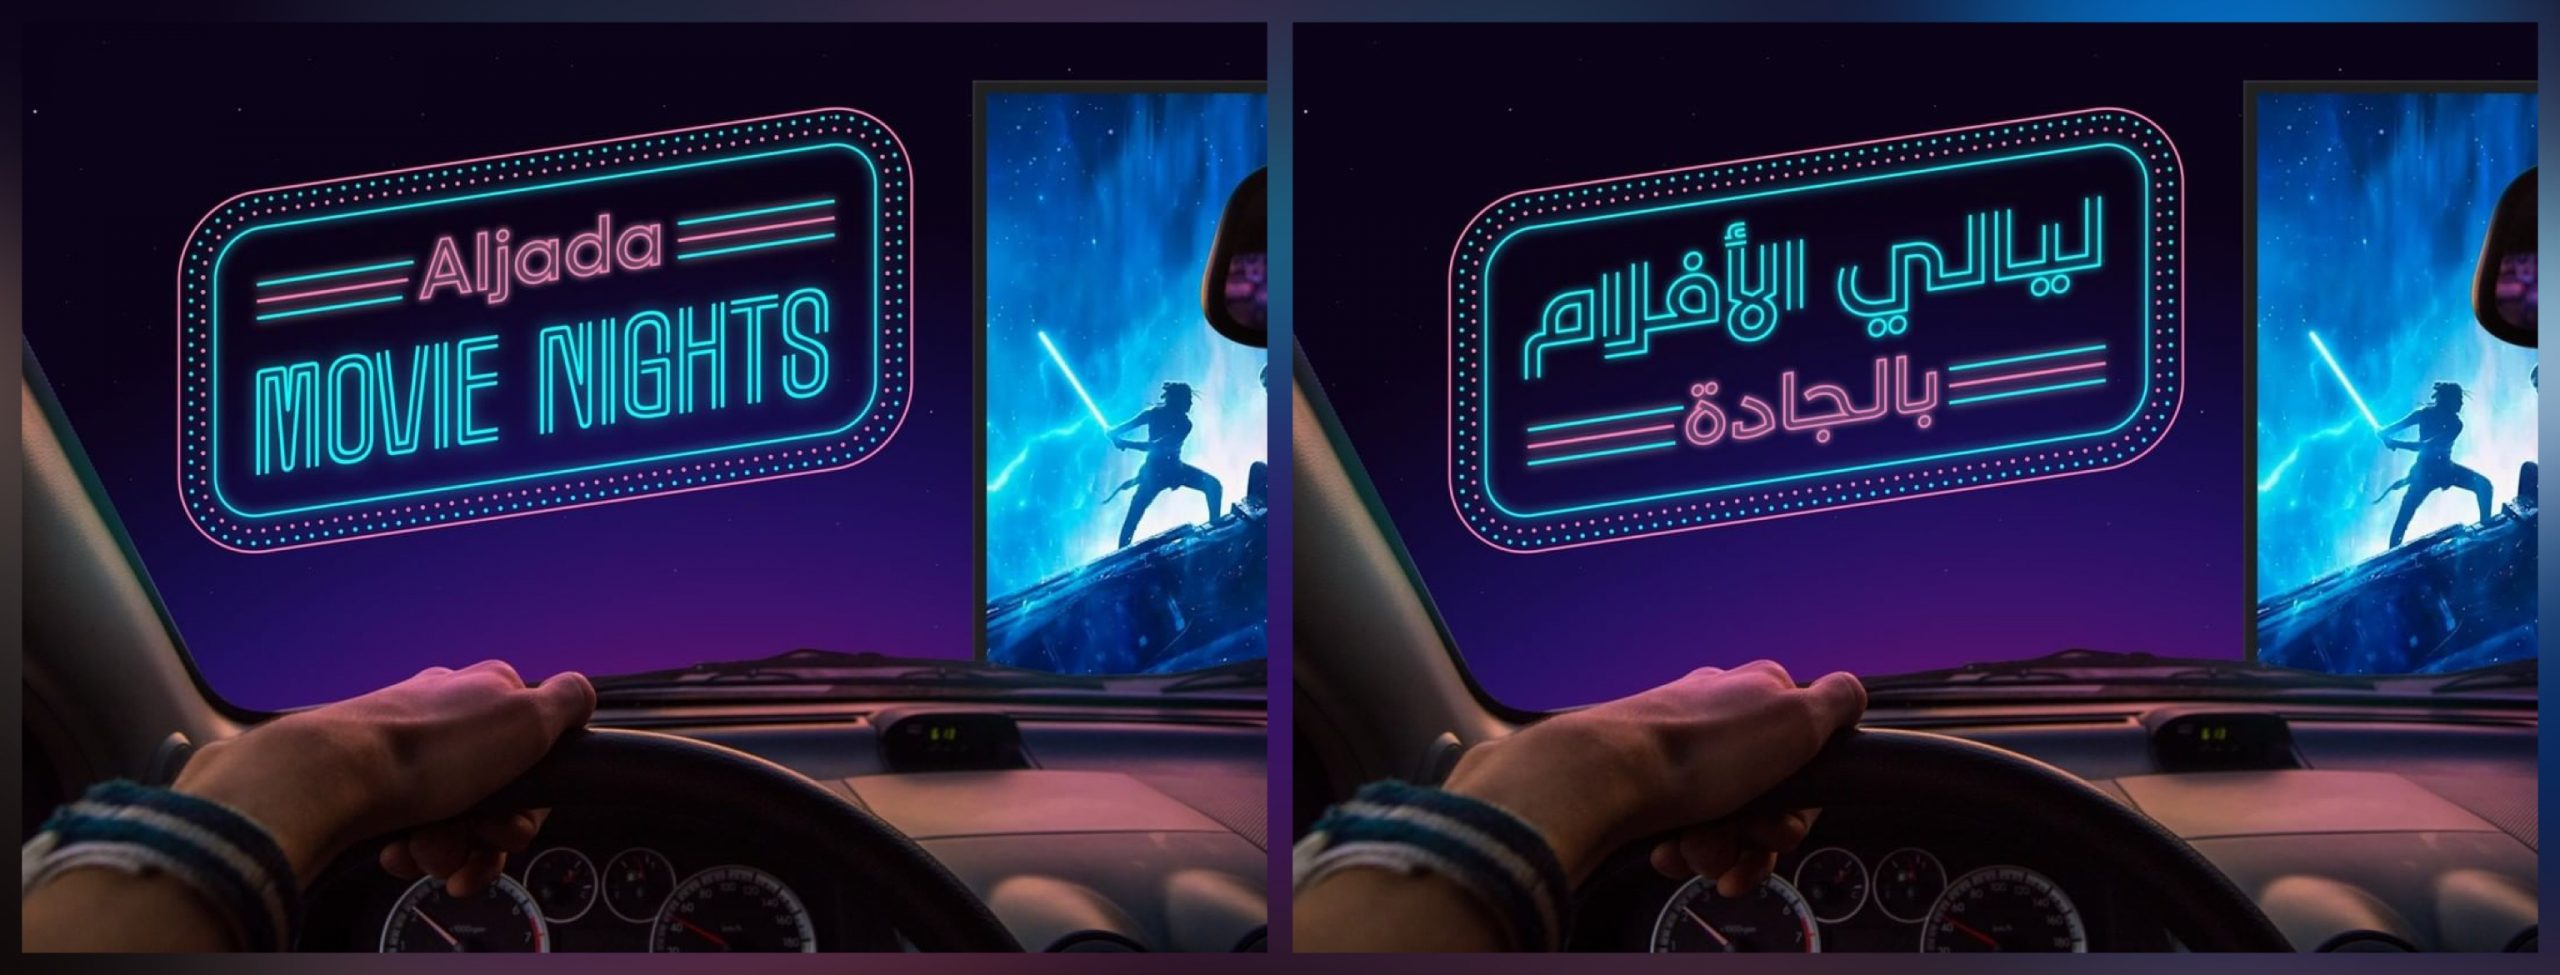 Sharjah drive-in cinema Movie Nights at Aljada - Coming Soon in UAE